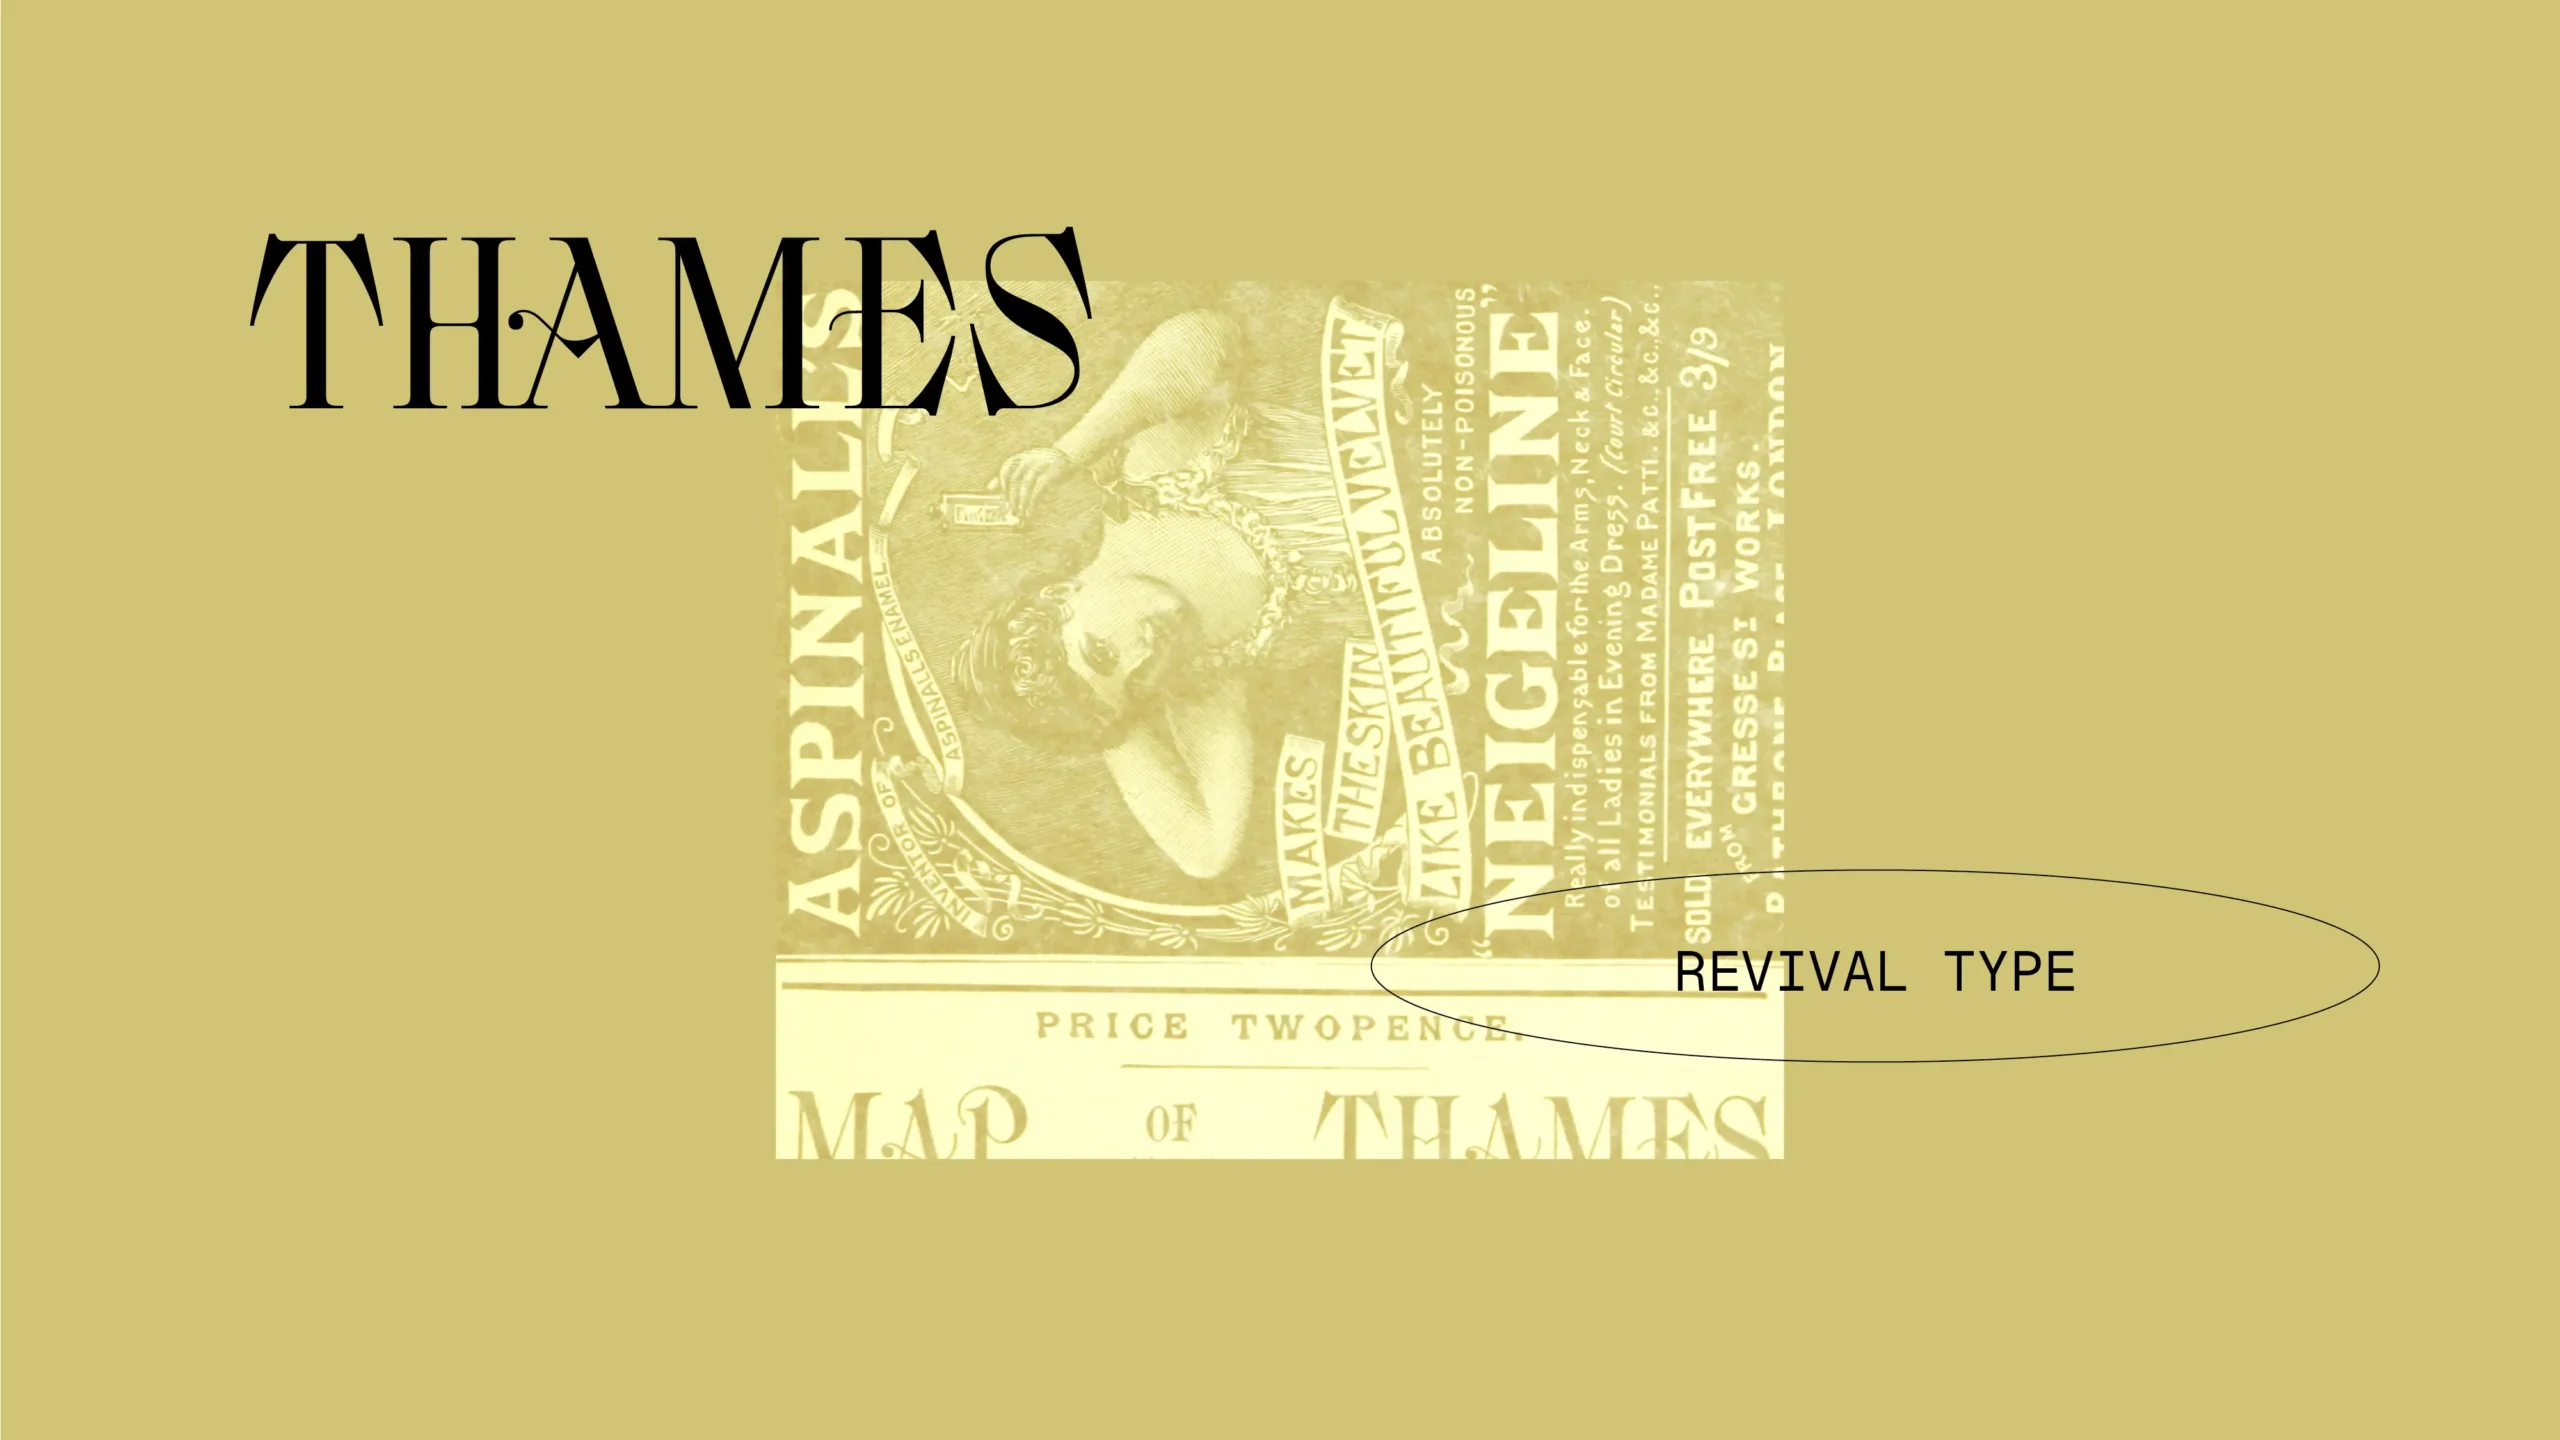 brutststadt_website_preview_Thames_1920-x-1080_02